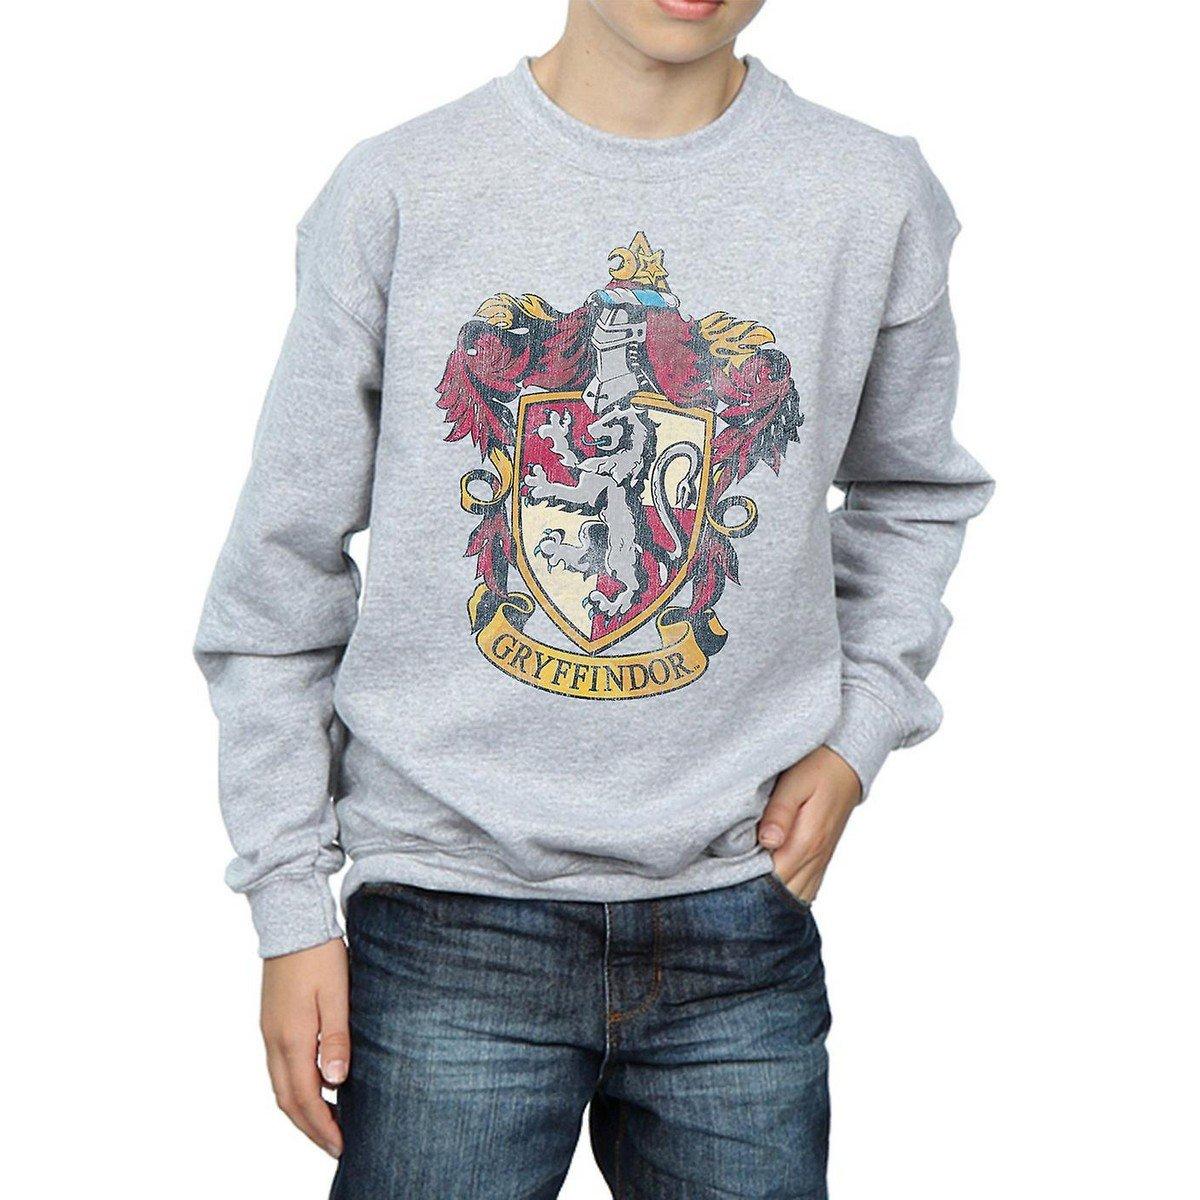 Sweatshirt Unisex Grau 152-158 von Harry Potter